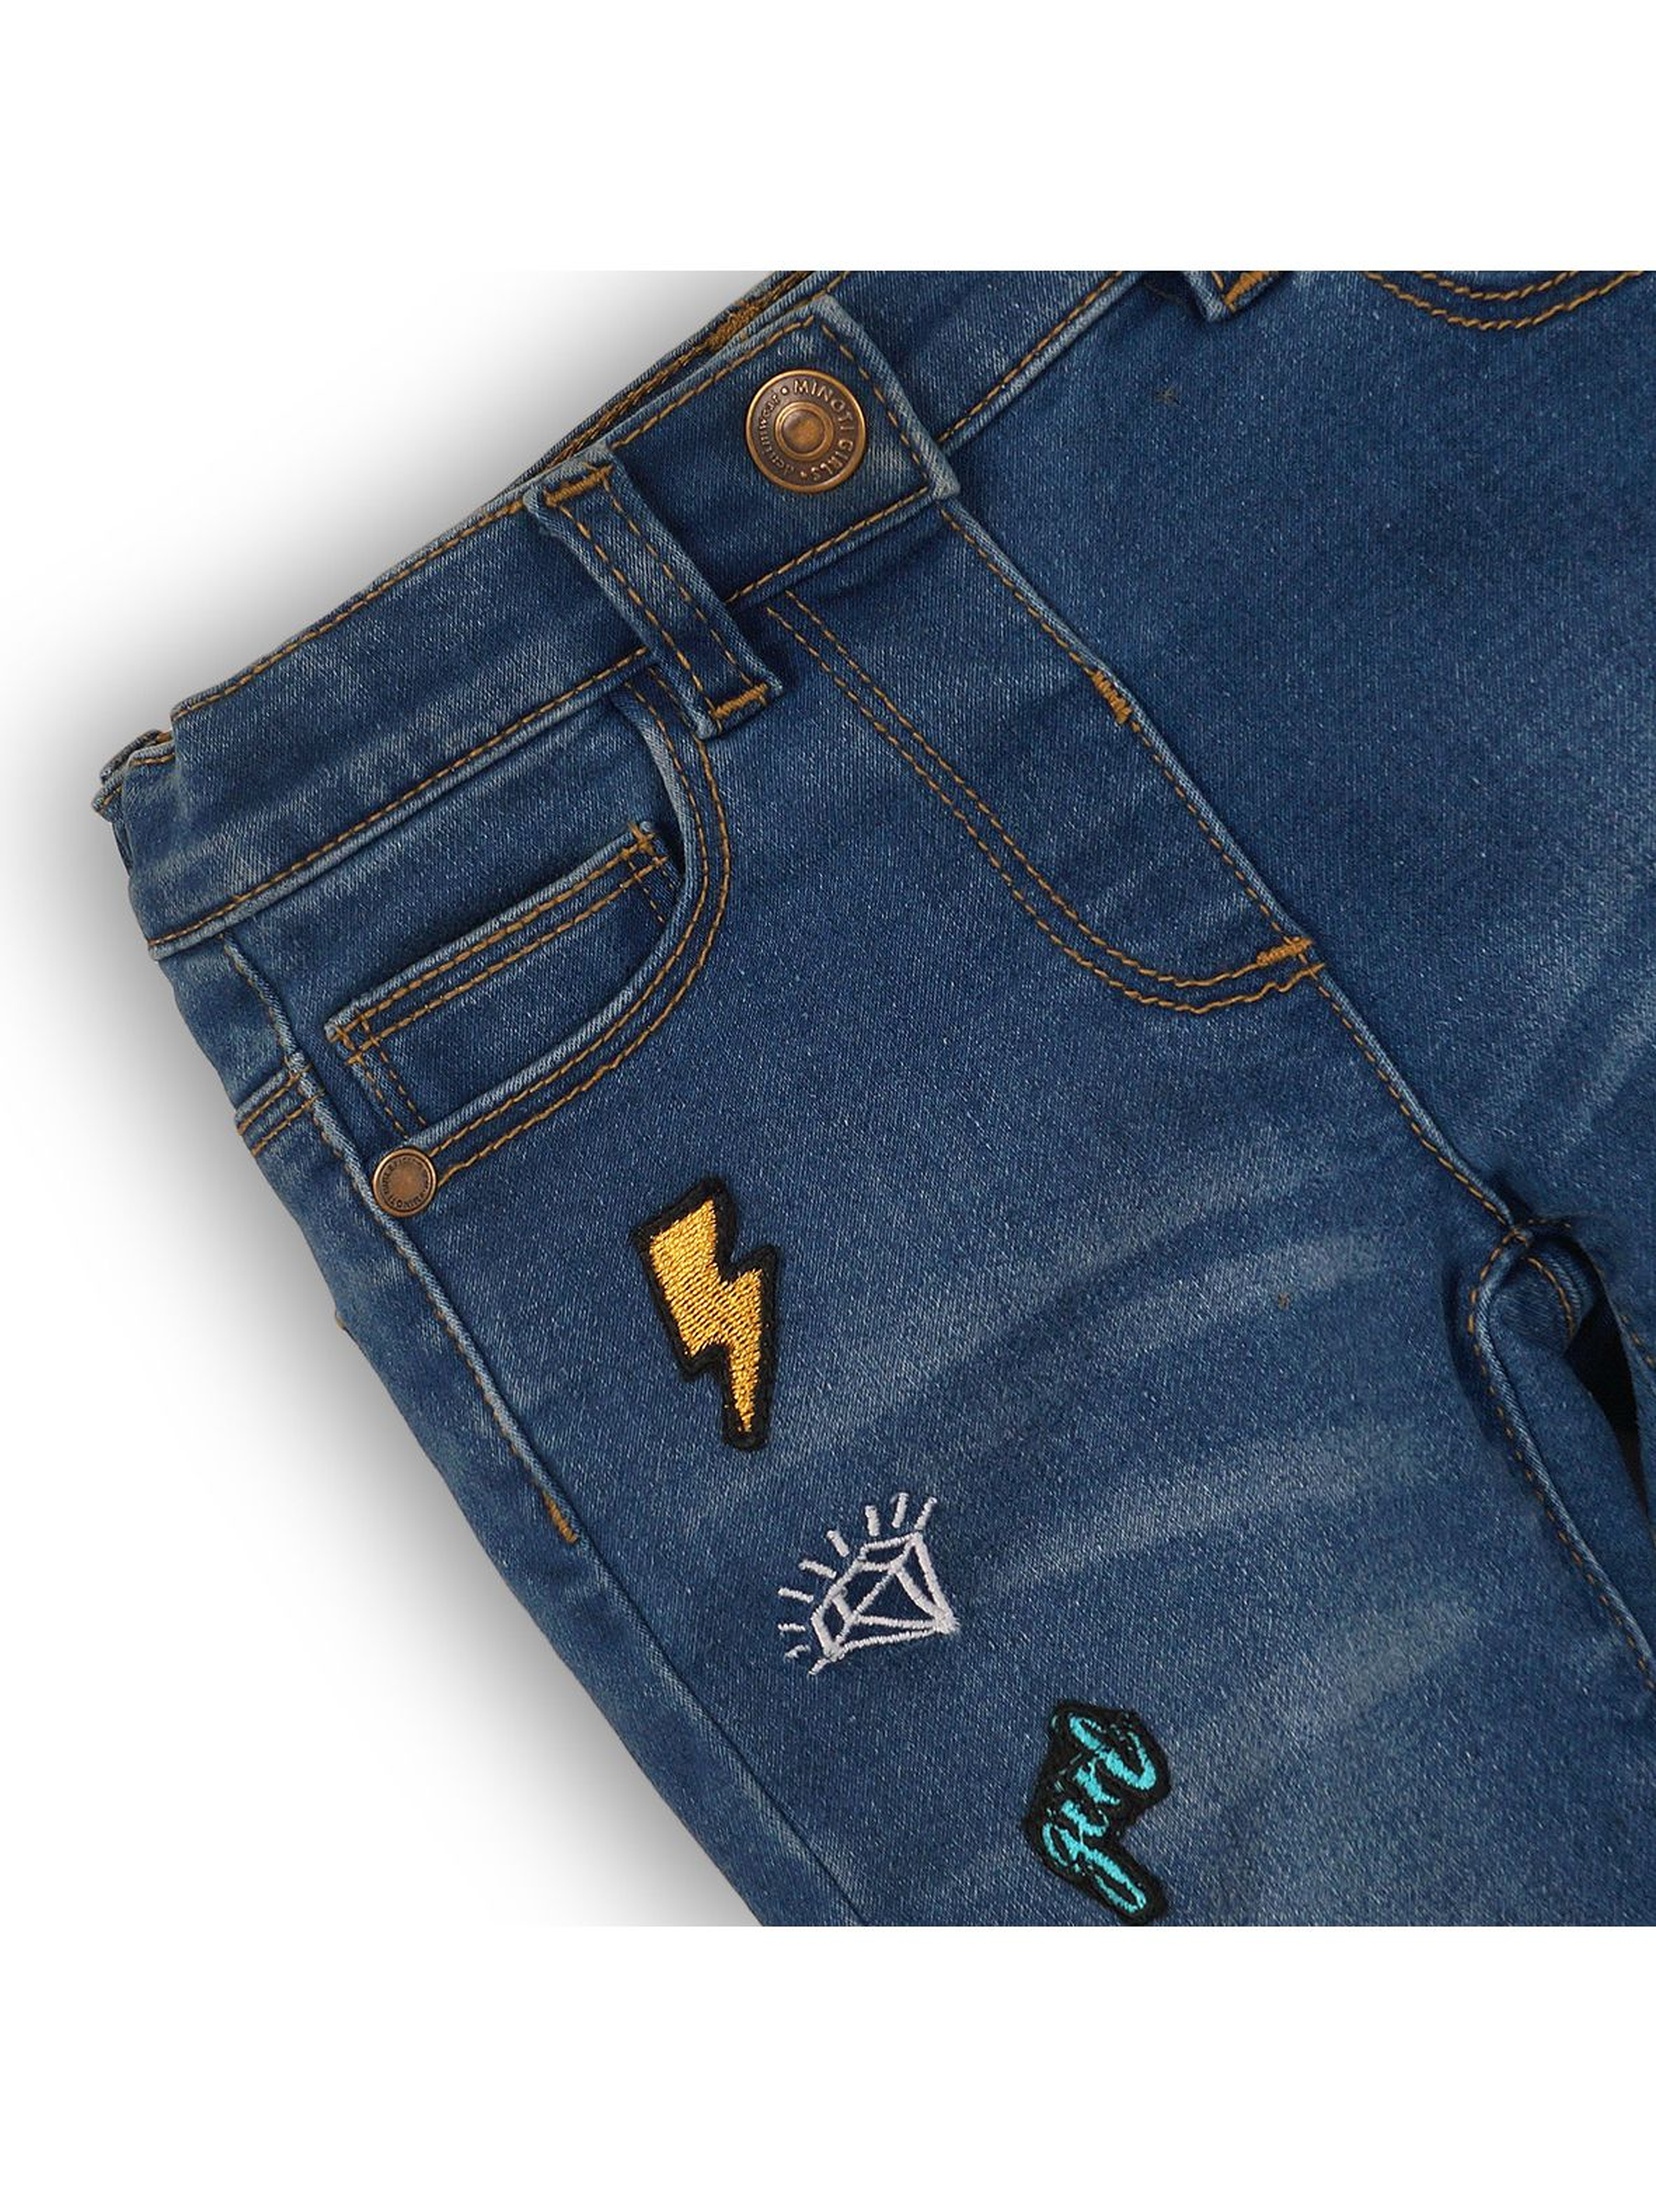 Spodnie dziewczęce jeansowe z naszywkami- niebieskie